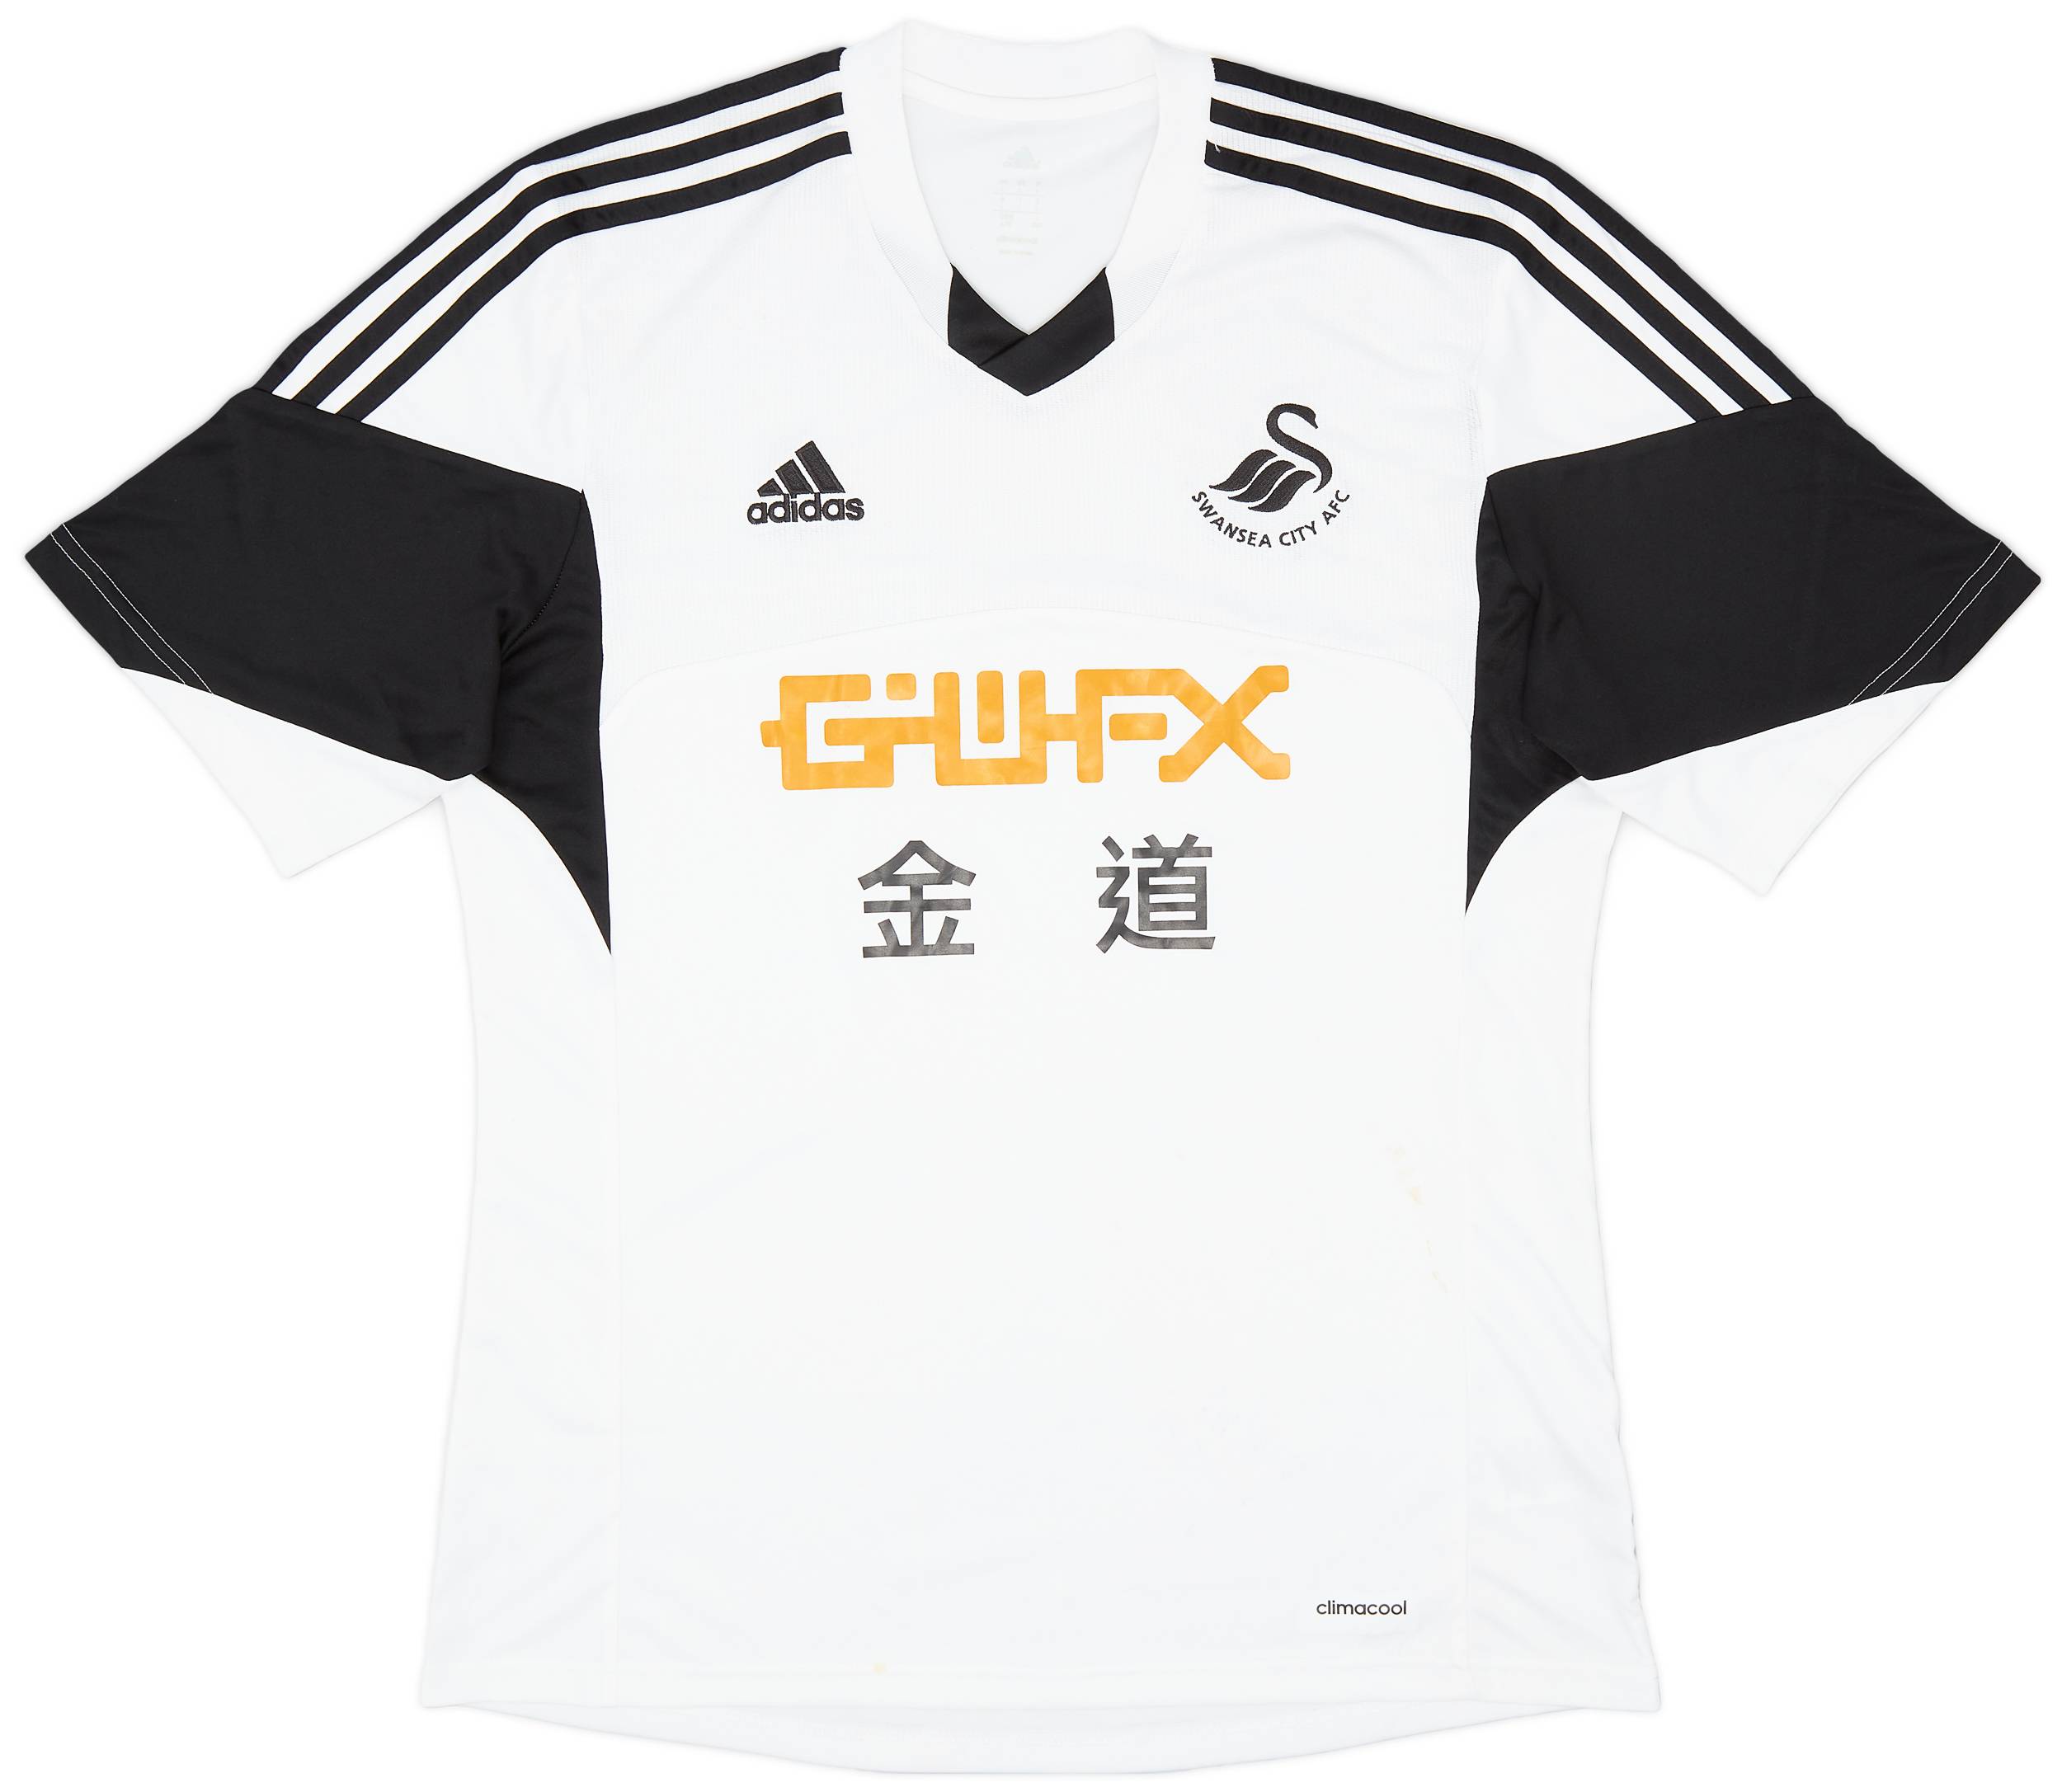 2013-14 Swansea Home Shirt - 6/10 - (L)